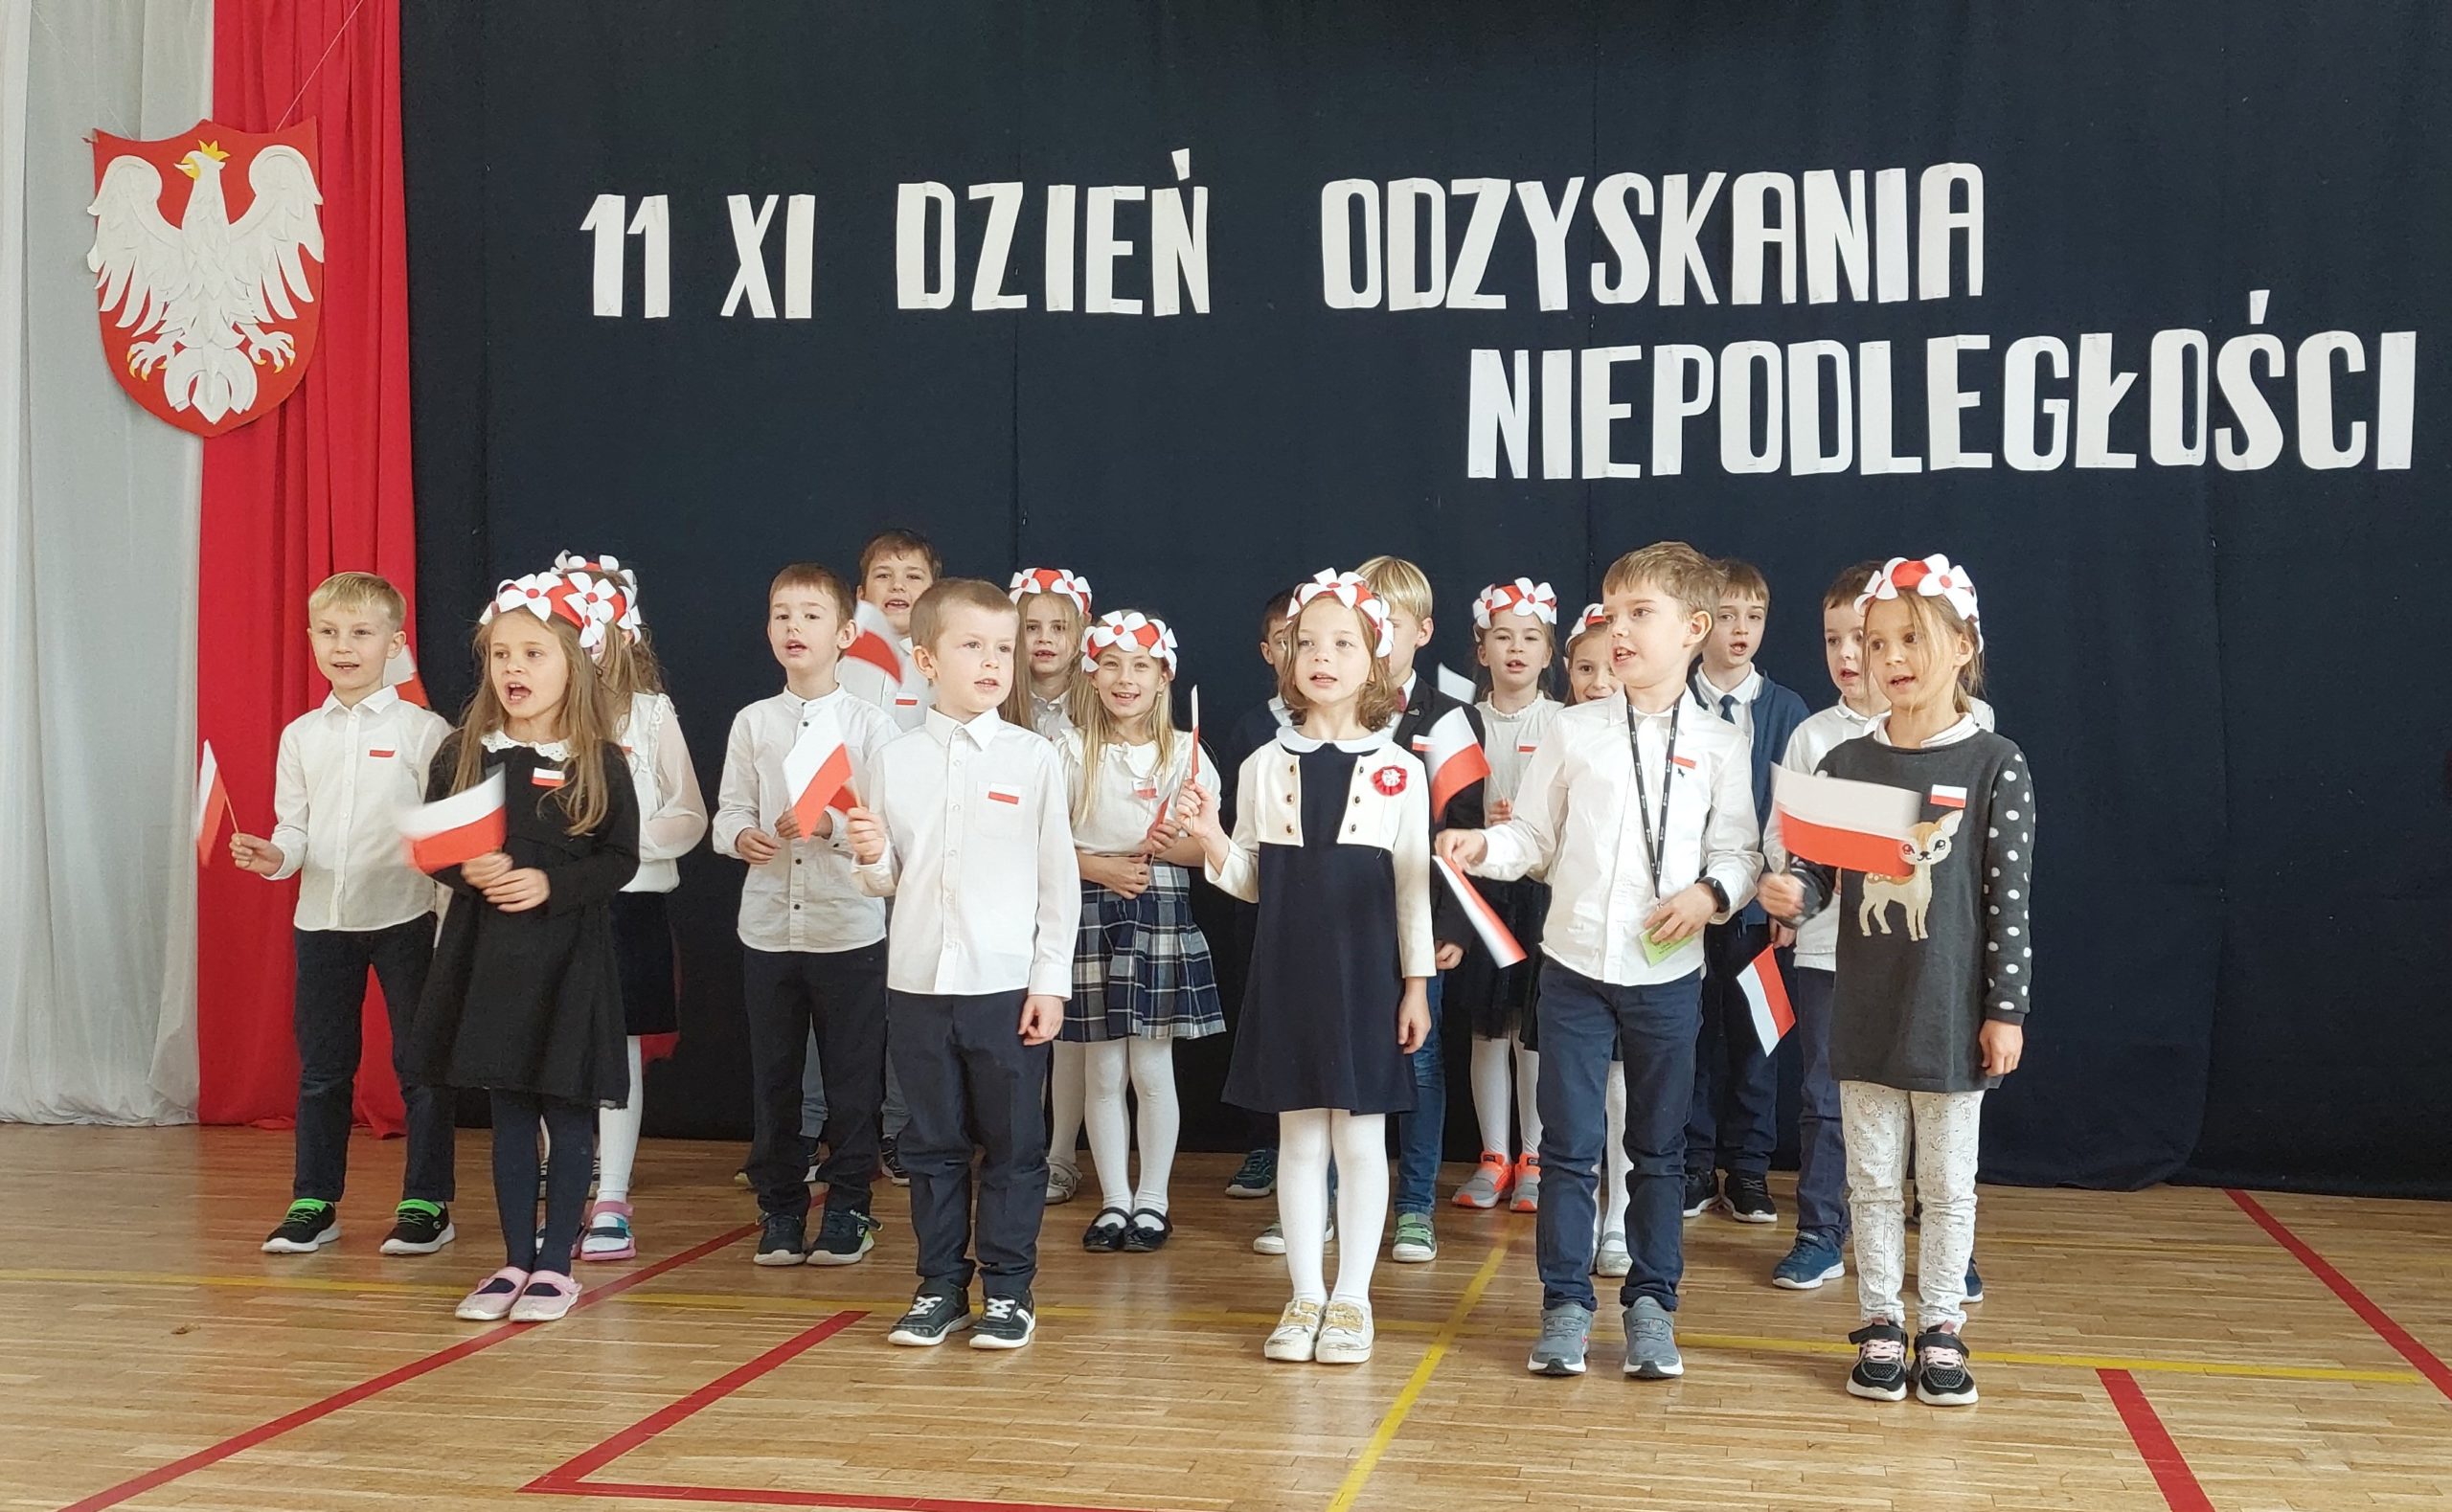 17 ubranych na galowo dzieci stoi na sali, w ręku trzymają białe i czerwone wstążki. W tyle godło Polski na tle biało czerwonej flagi, a nad dziećmi napis: 11 XI dzień odzyskania niepodległości